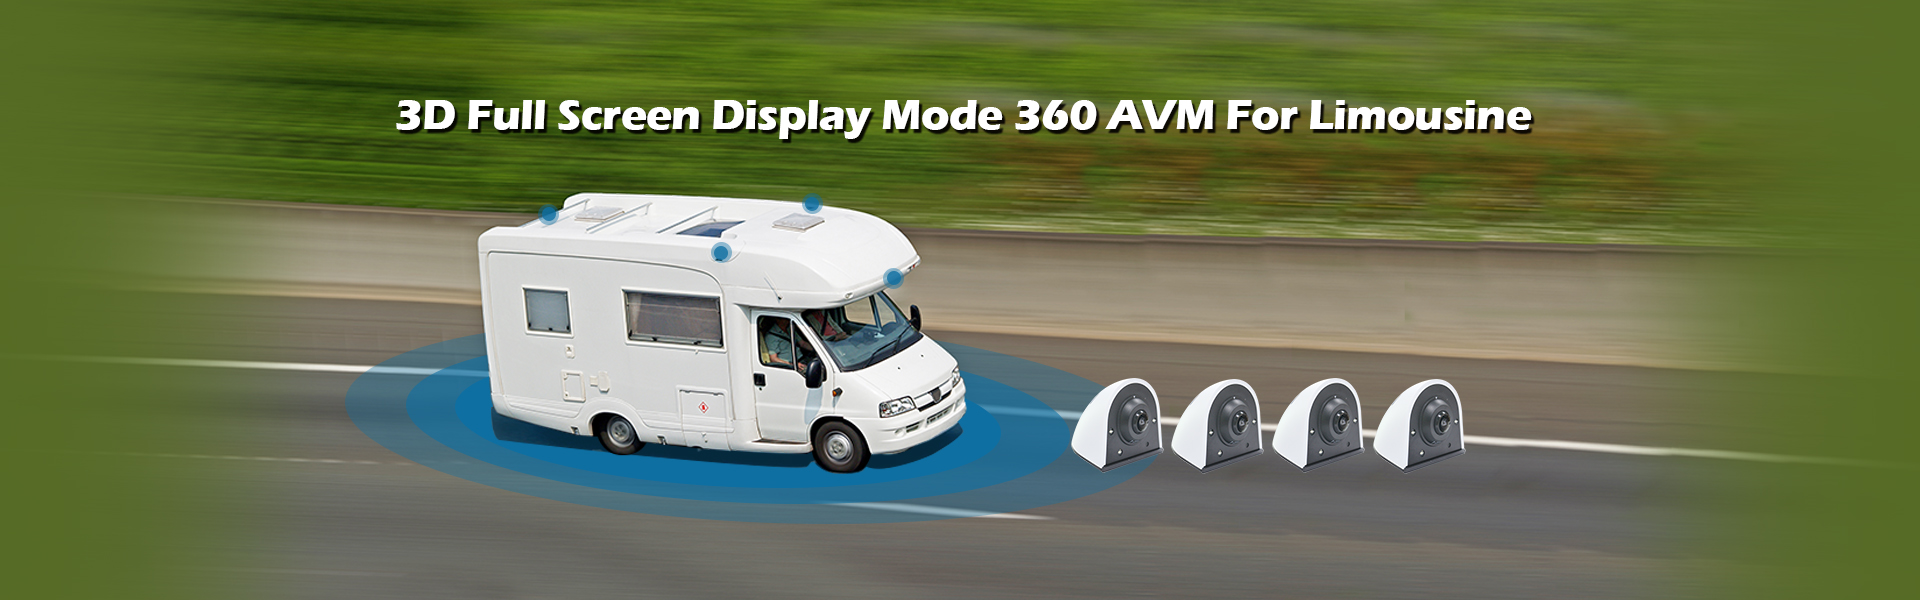 3D Full Screen Display Mode 360 AVM For Limousine